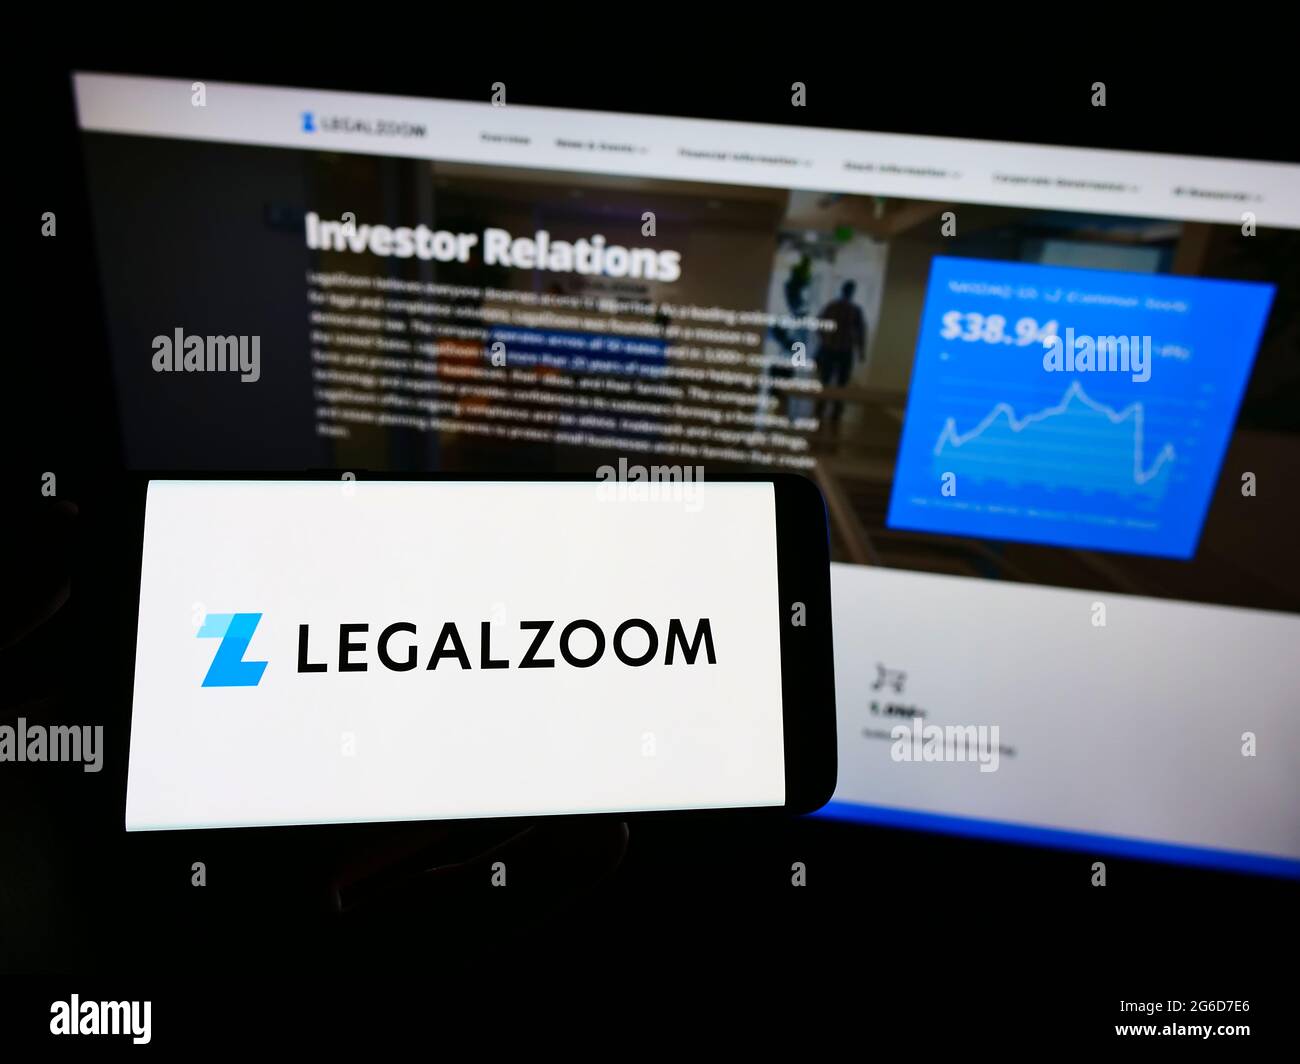 Personne tenant un téléphone portable avec le logo de la société américaine de technologie juridique LegalZoom.com Inc. À l'écran en face de la page Web. Mise au point sur l'affichage du téléphone. Banque D'Images